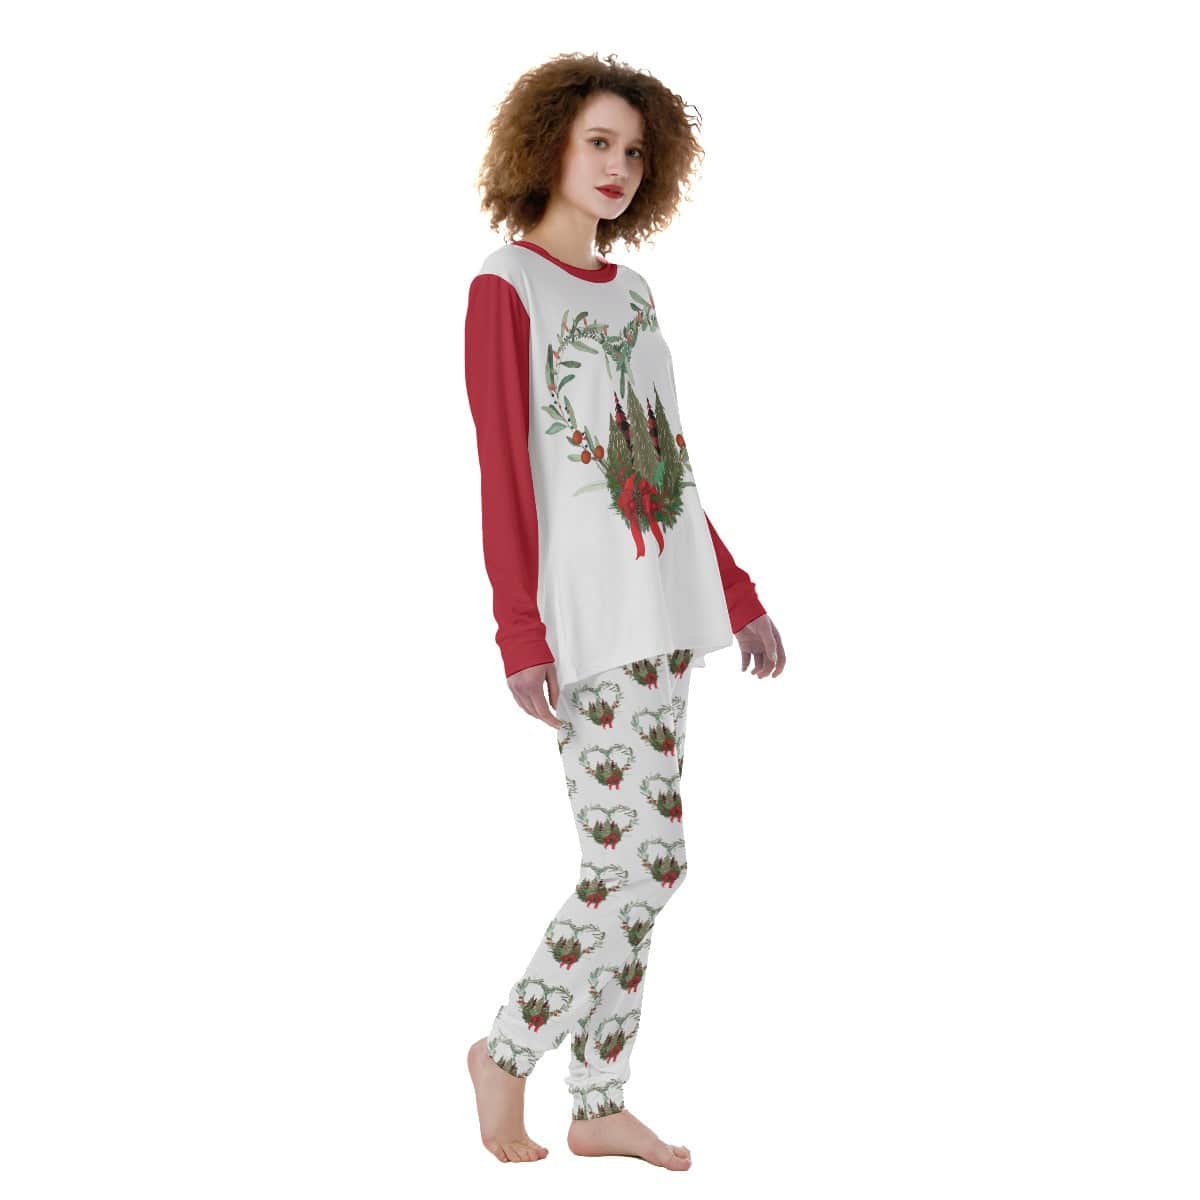 Women's Christmas Pajamas 2 pc Set - S-XL